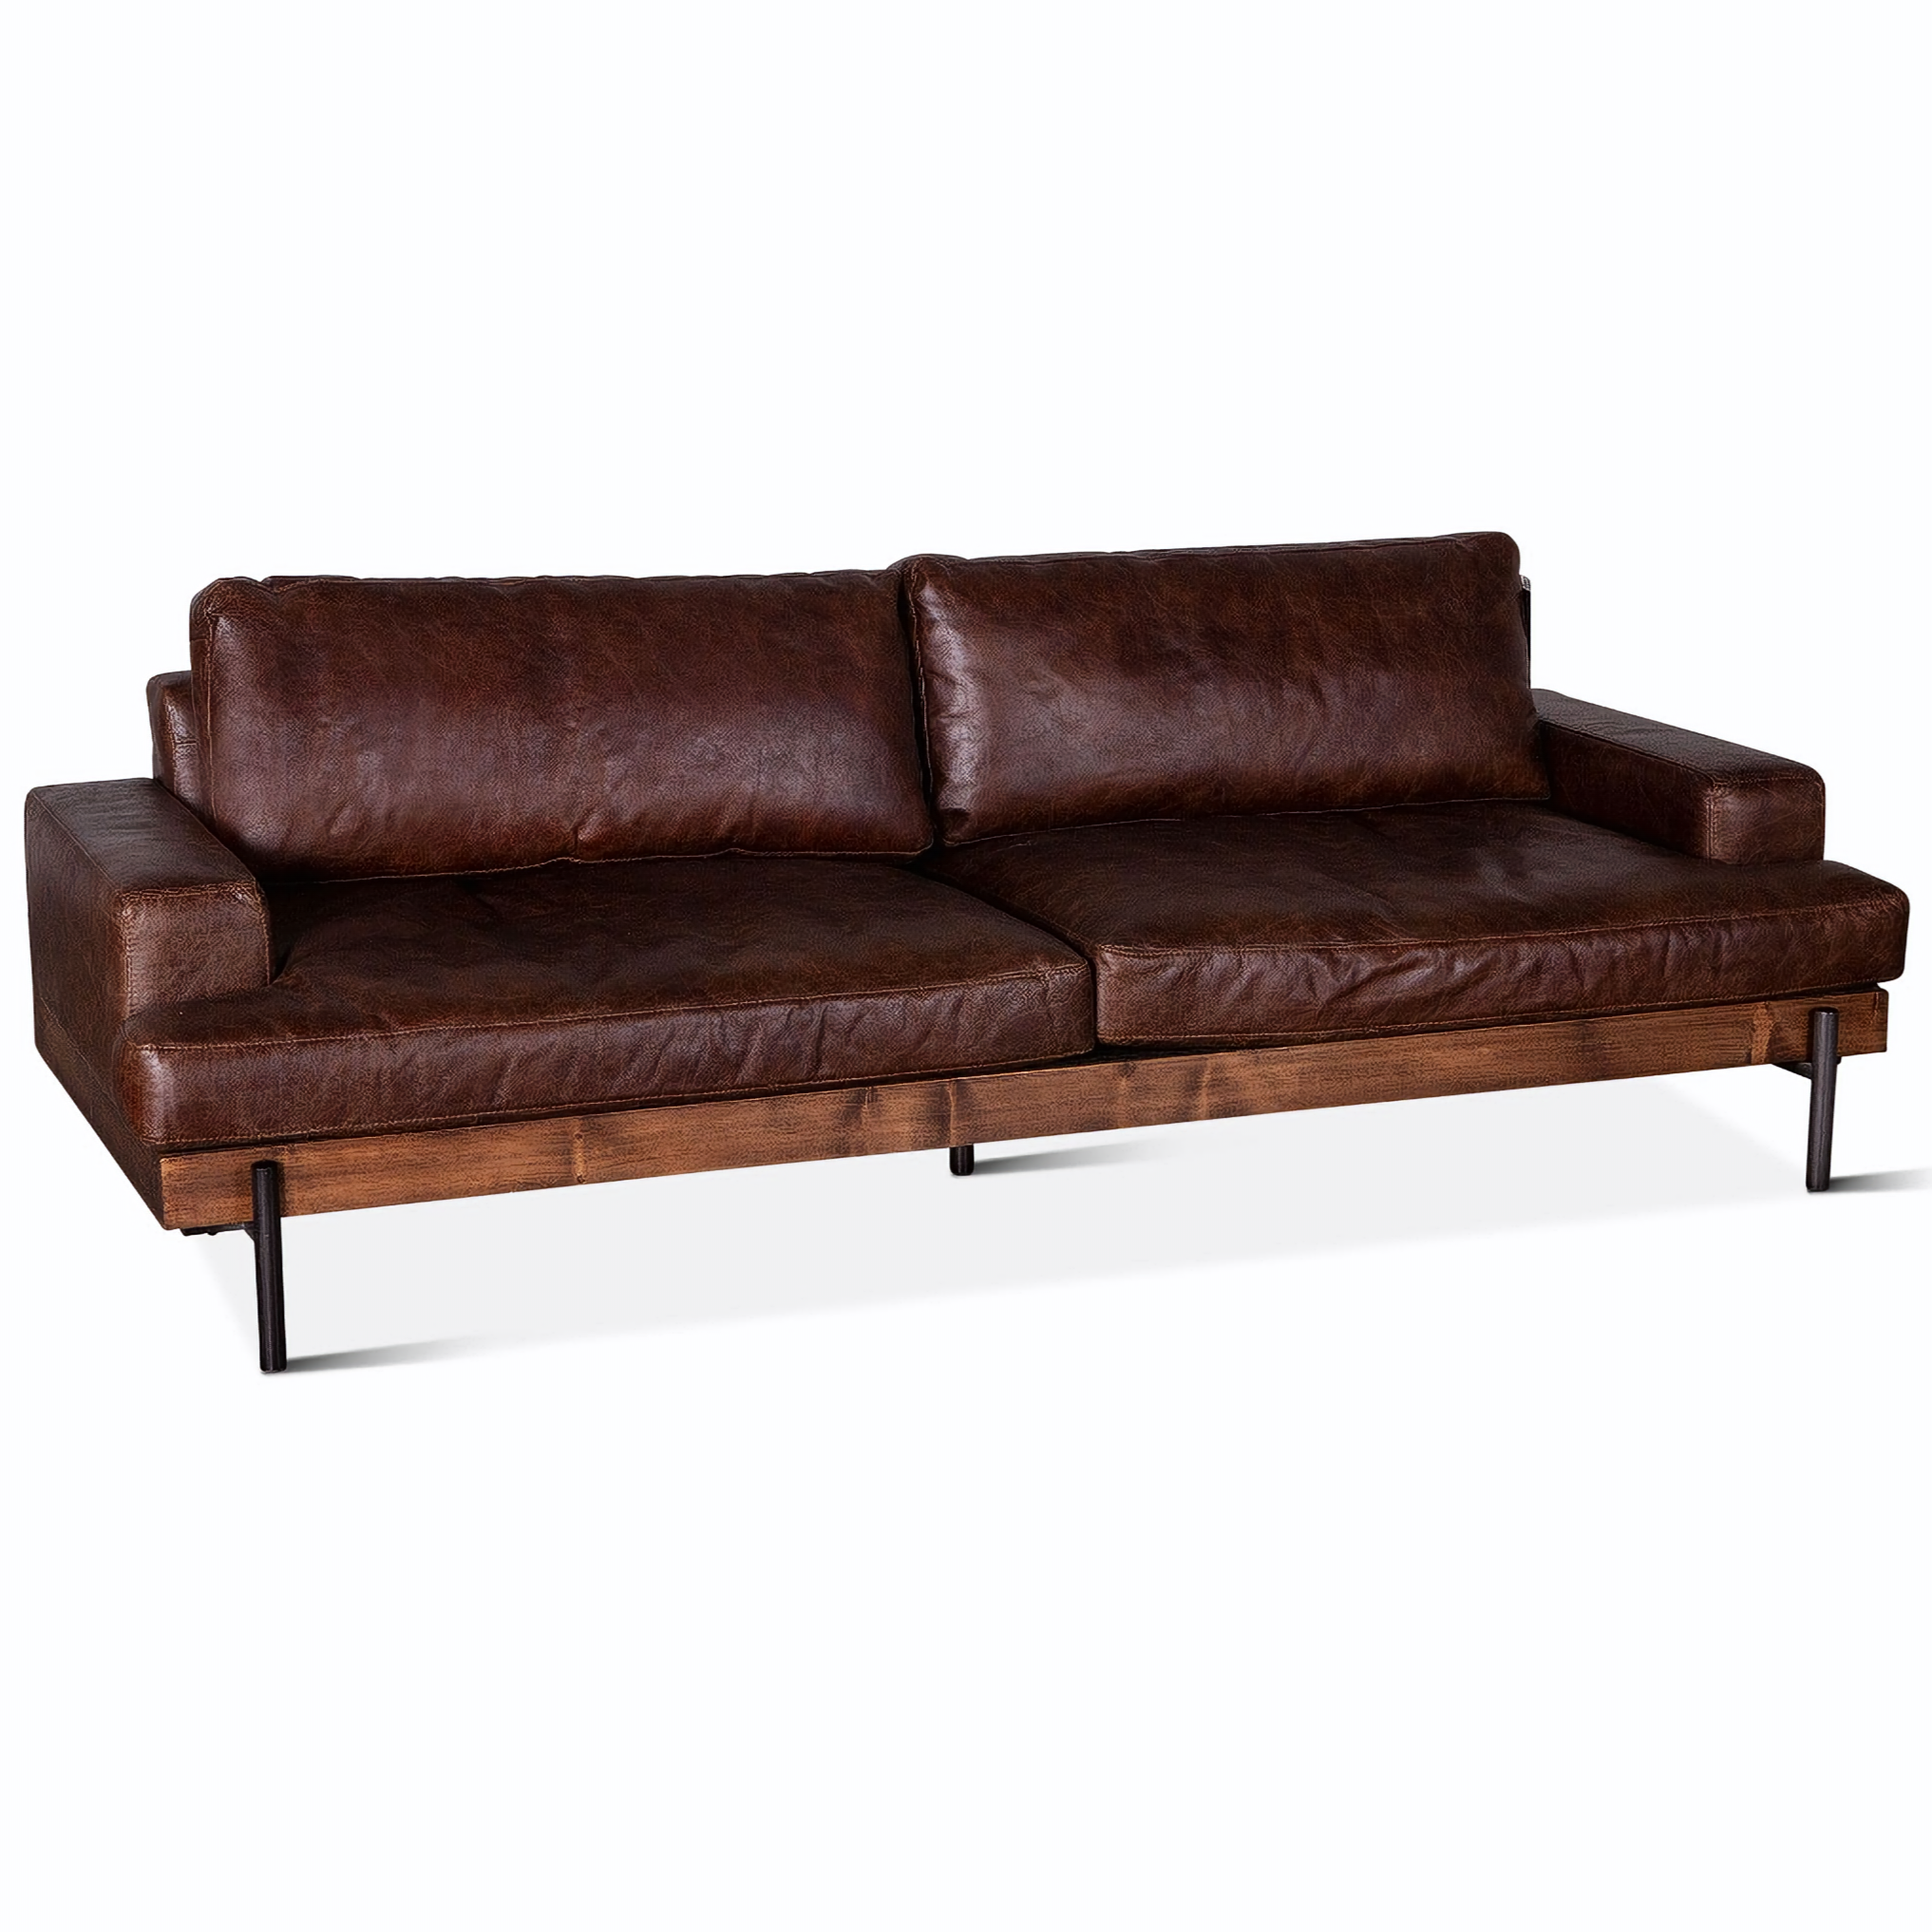 Portofino Industrial Brown Leather Sofa